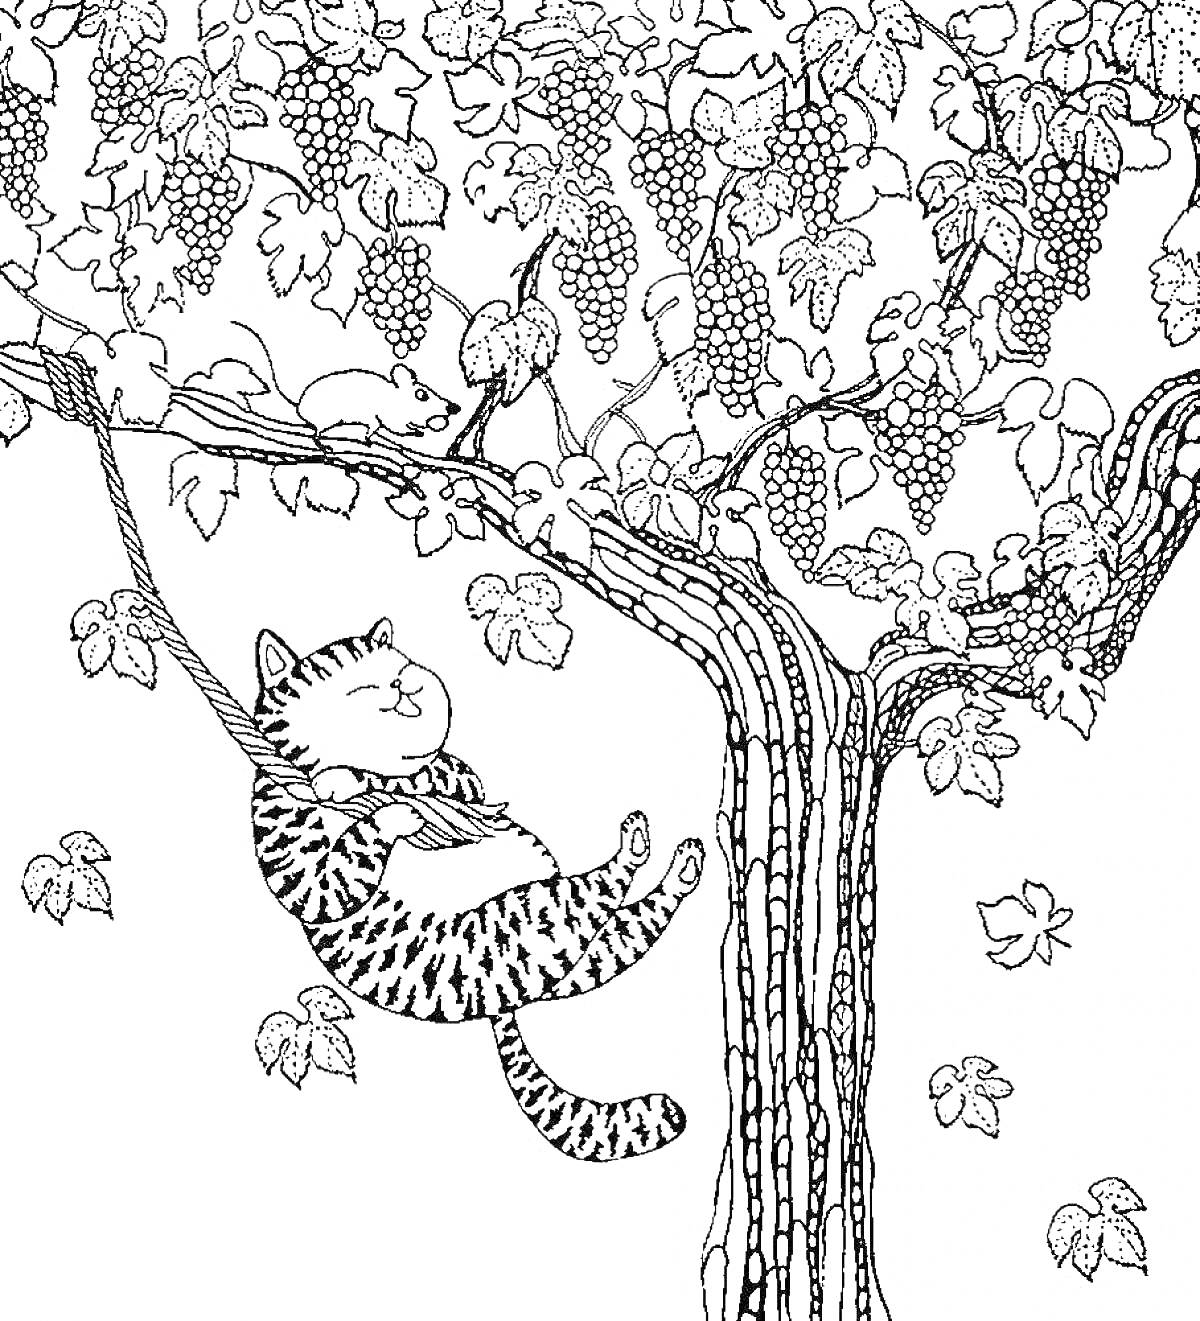 Кот, спящий в гамаке на ветке дерева среди листьев и виноградных гроздей